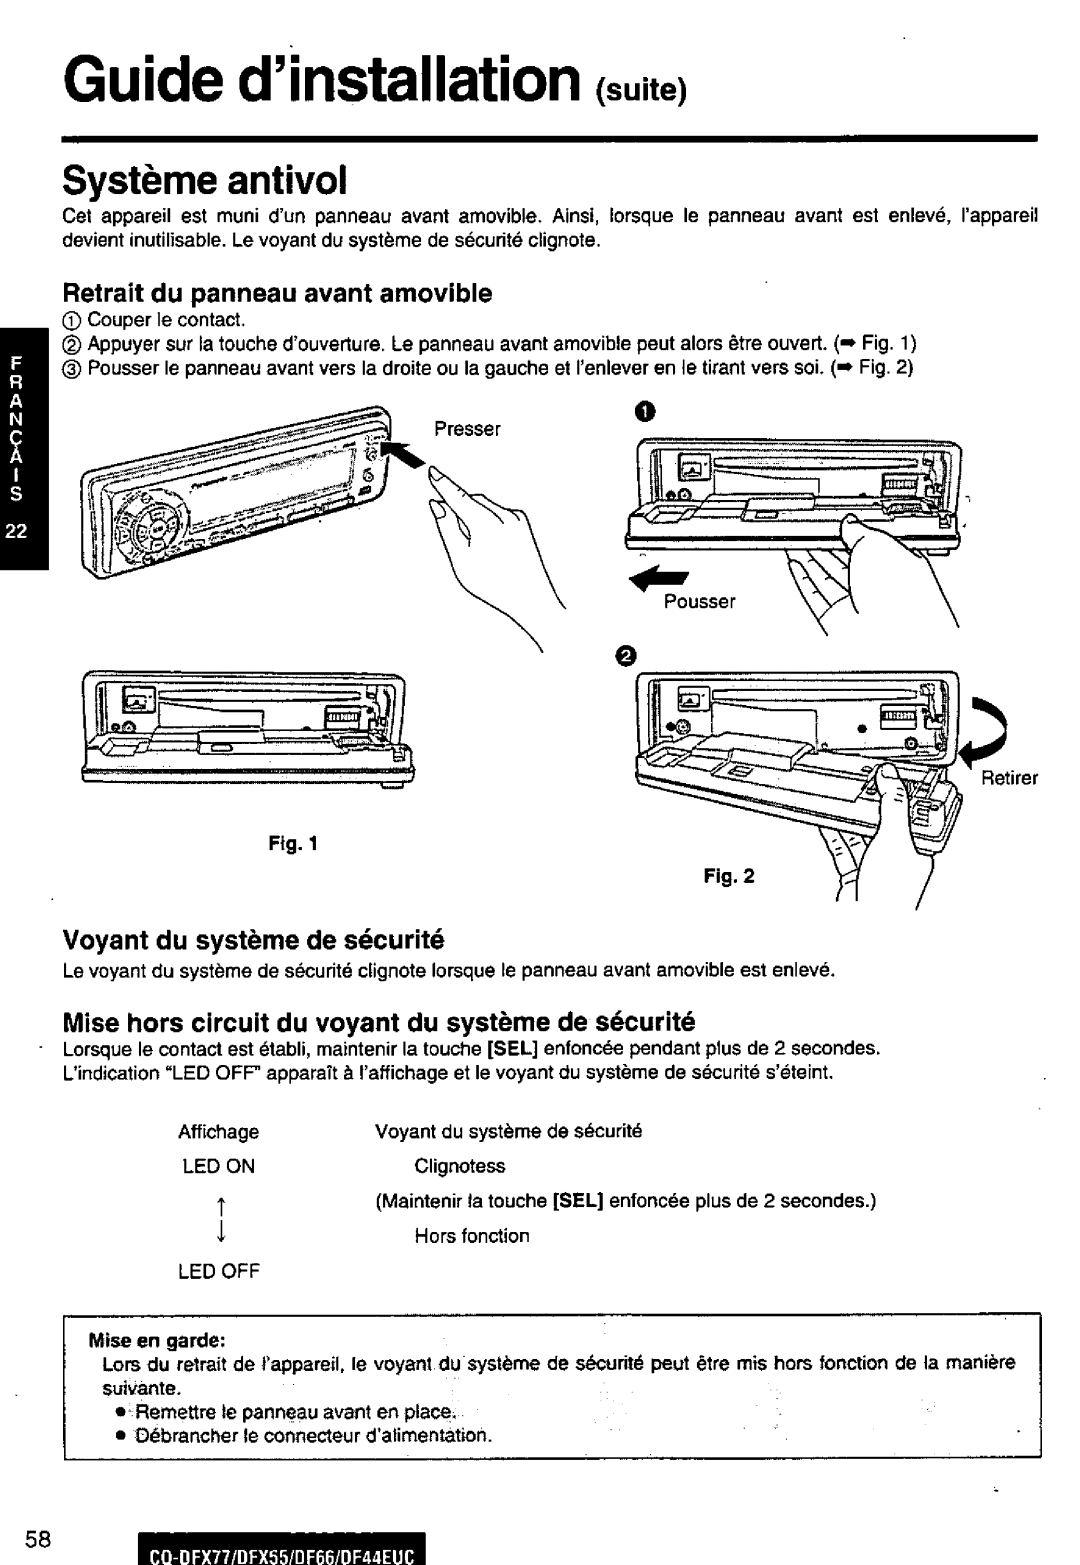 Panasonic DF44EUC, CQ-DFX77, DF66EUC, CQ-DFX55 manual 